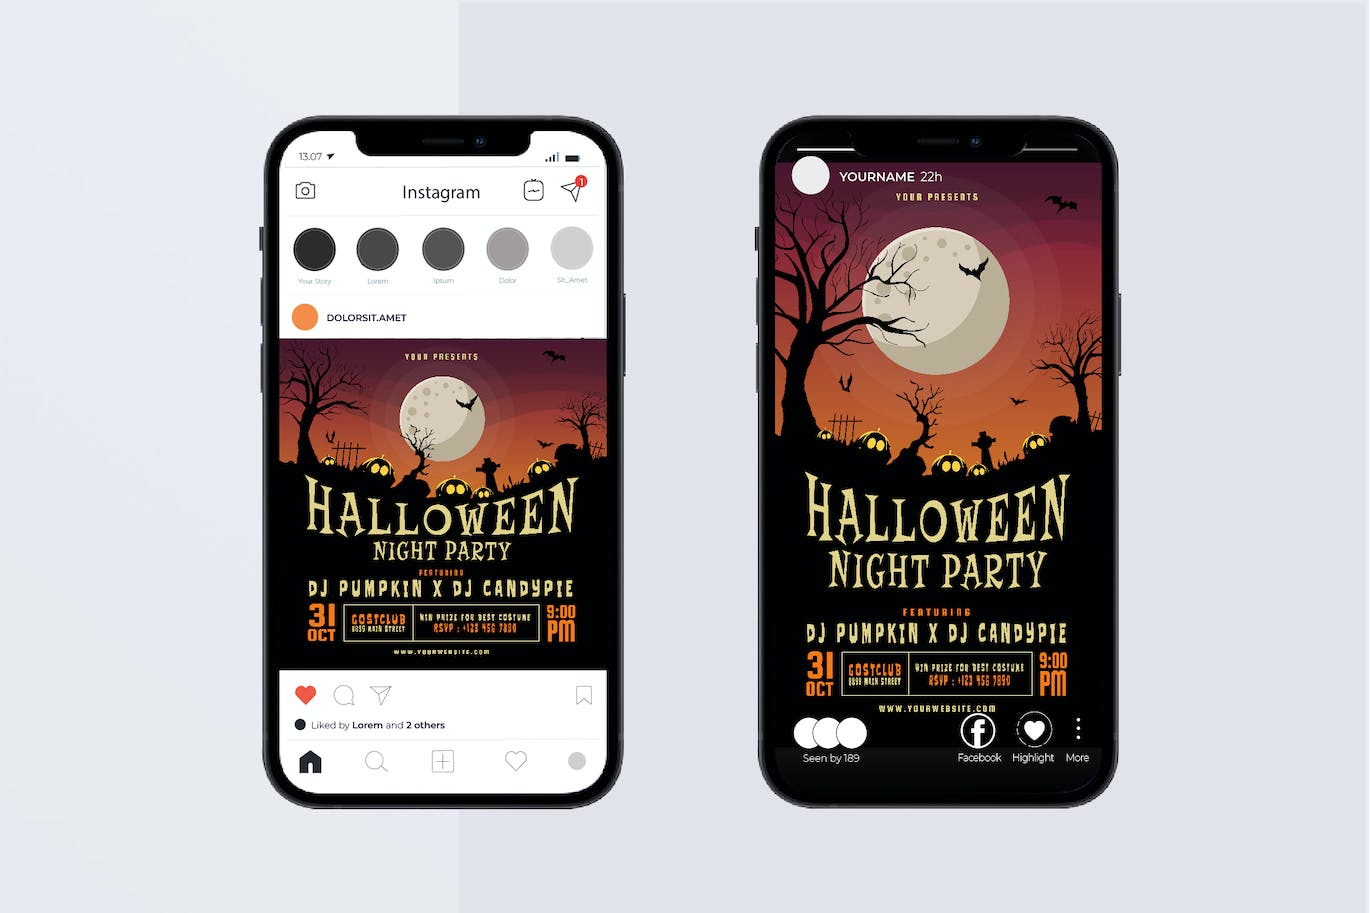 万圣节之夜派对宣传单模板 Halloween Night Party Flyer Set 设计素材 第2张